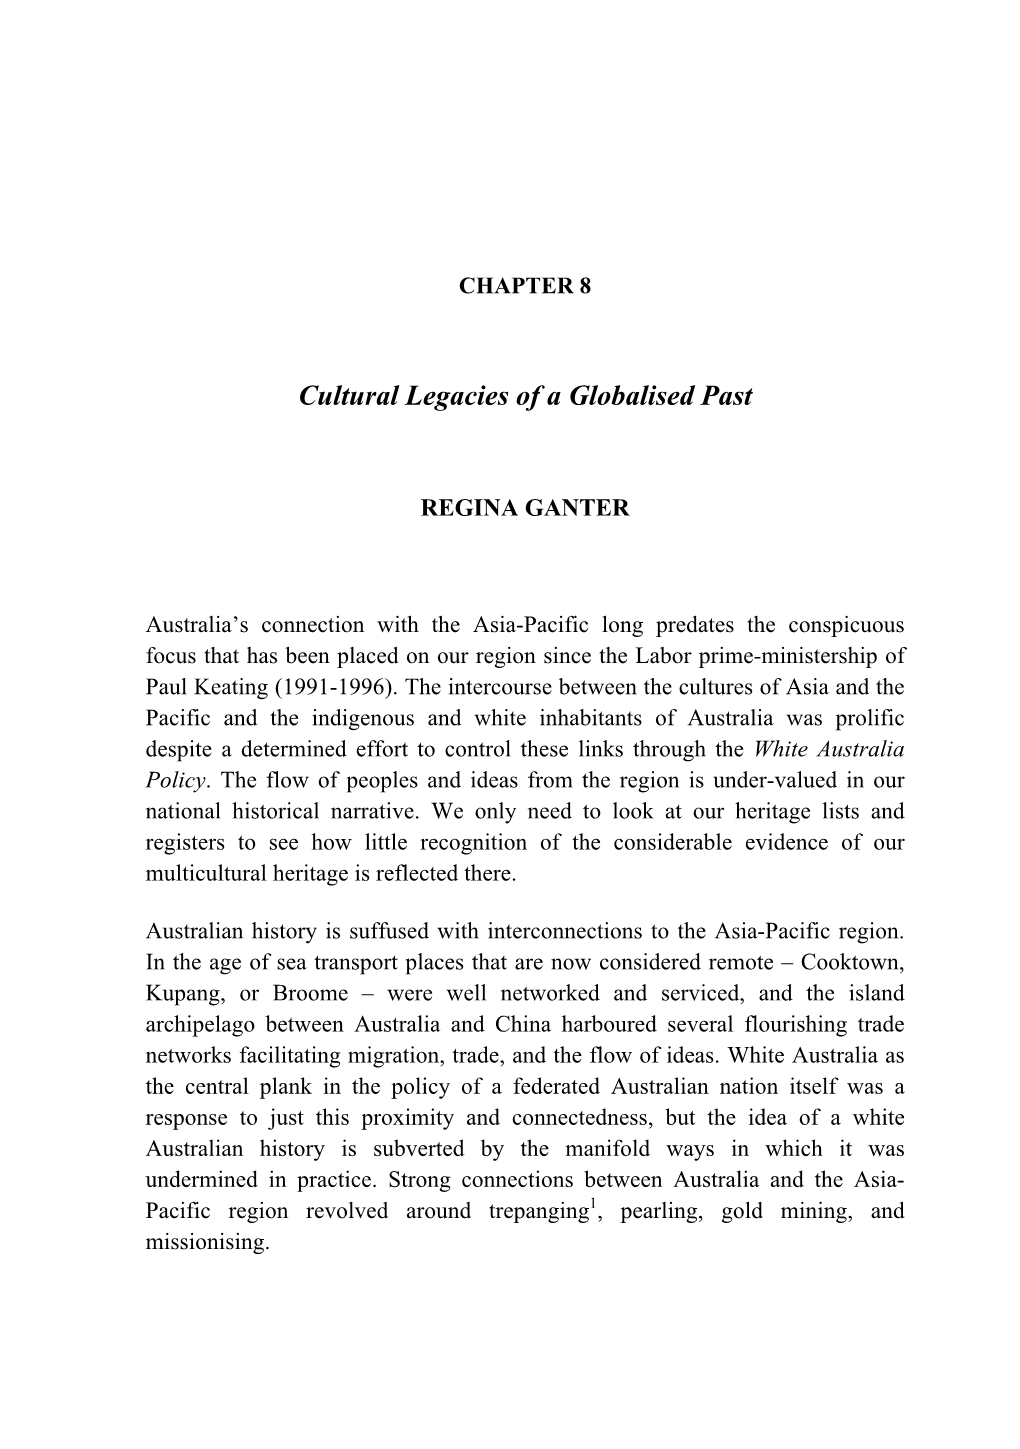 Cultural Legacies of a Globalised Past